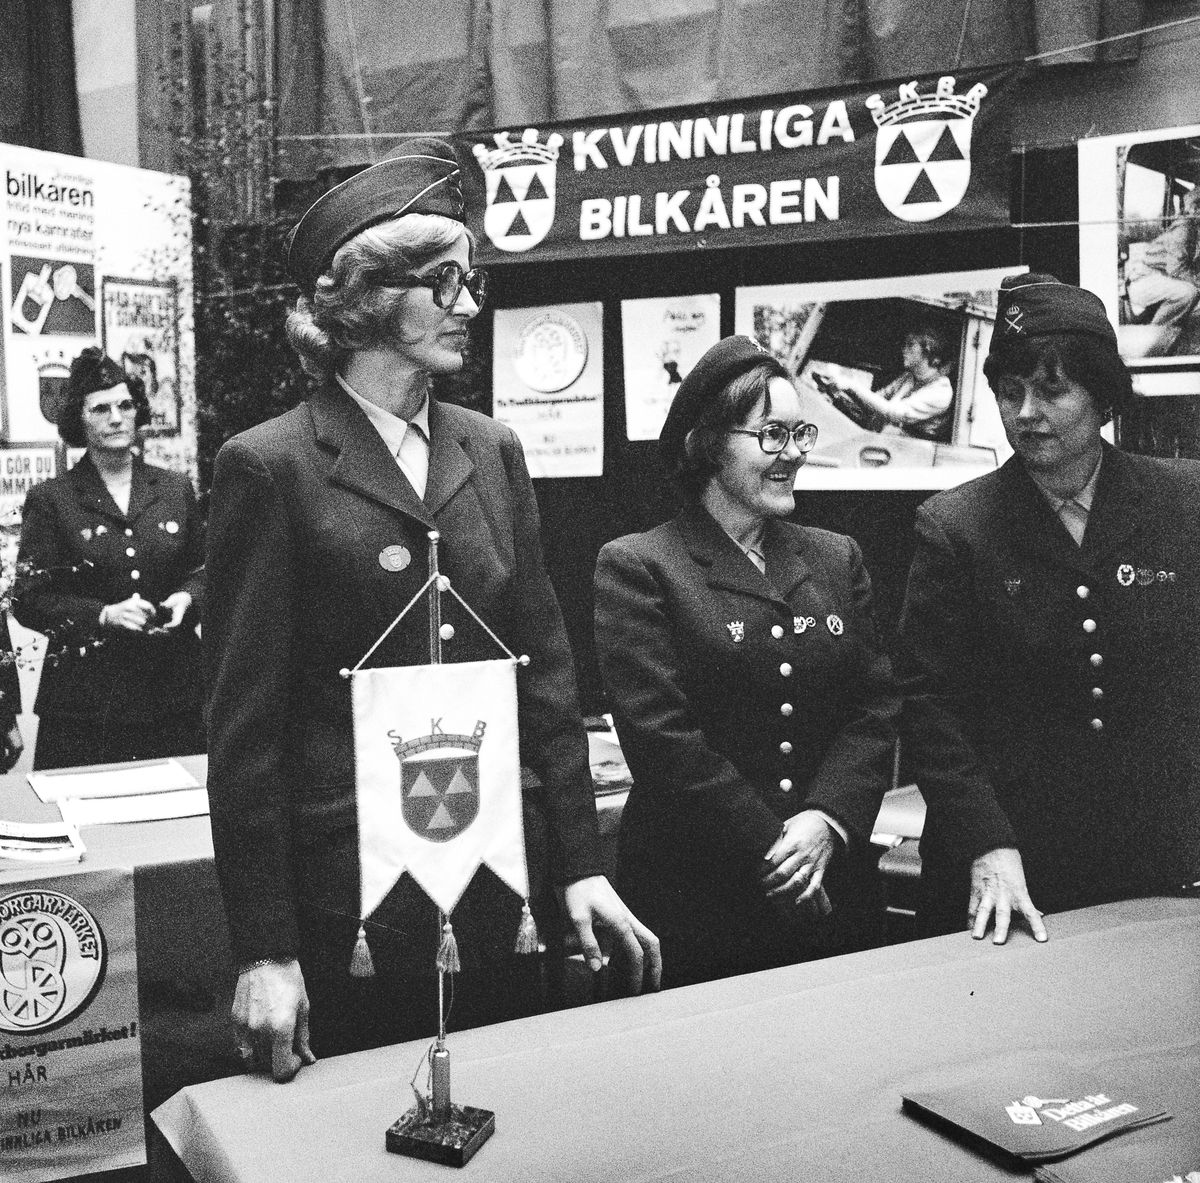 Utställningen i gymnastiksalen.
Kvinnliga Bilkåren (SKBR) visade bl. a Trafikborgarmärket.
Fr v: Aira Andersen, Sonja Jönsson och Marianne Sundqvist.